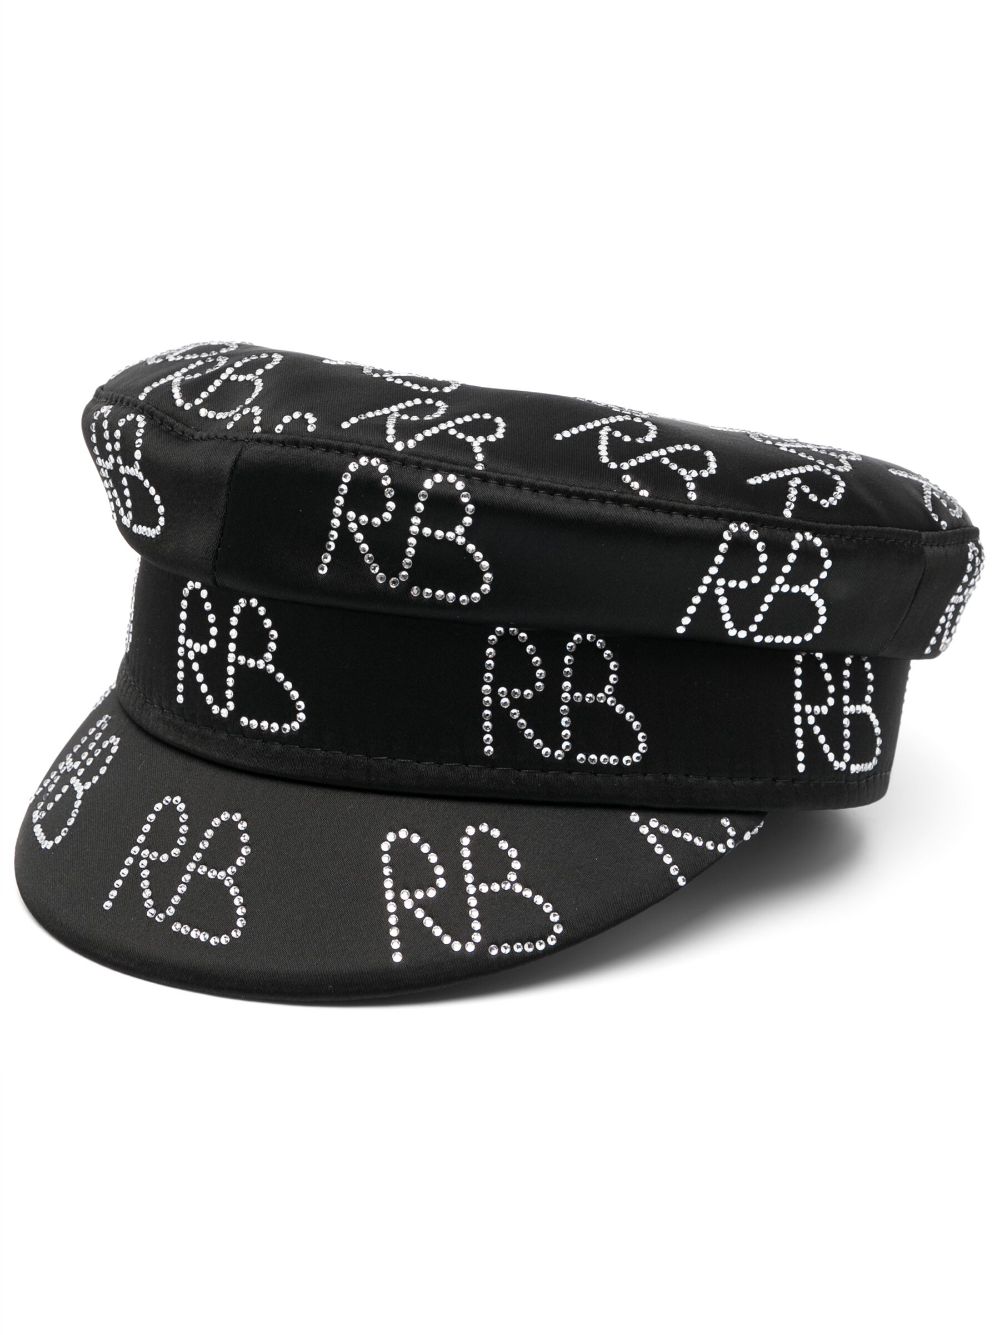 Ruslan Baginskiy crystal-embellished baker boy hat - Black von Ruslan Baginskiy